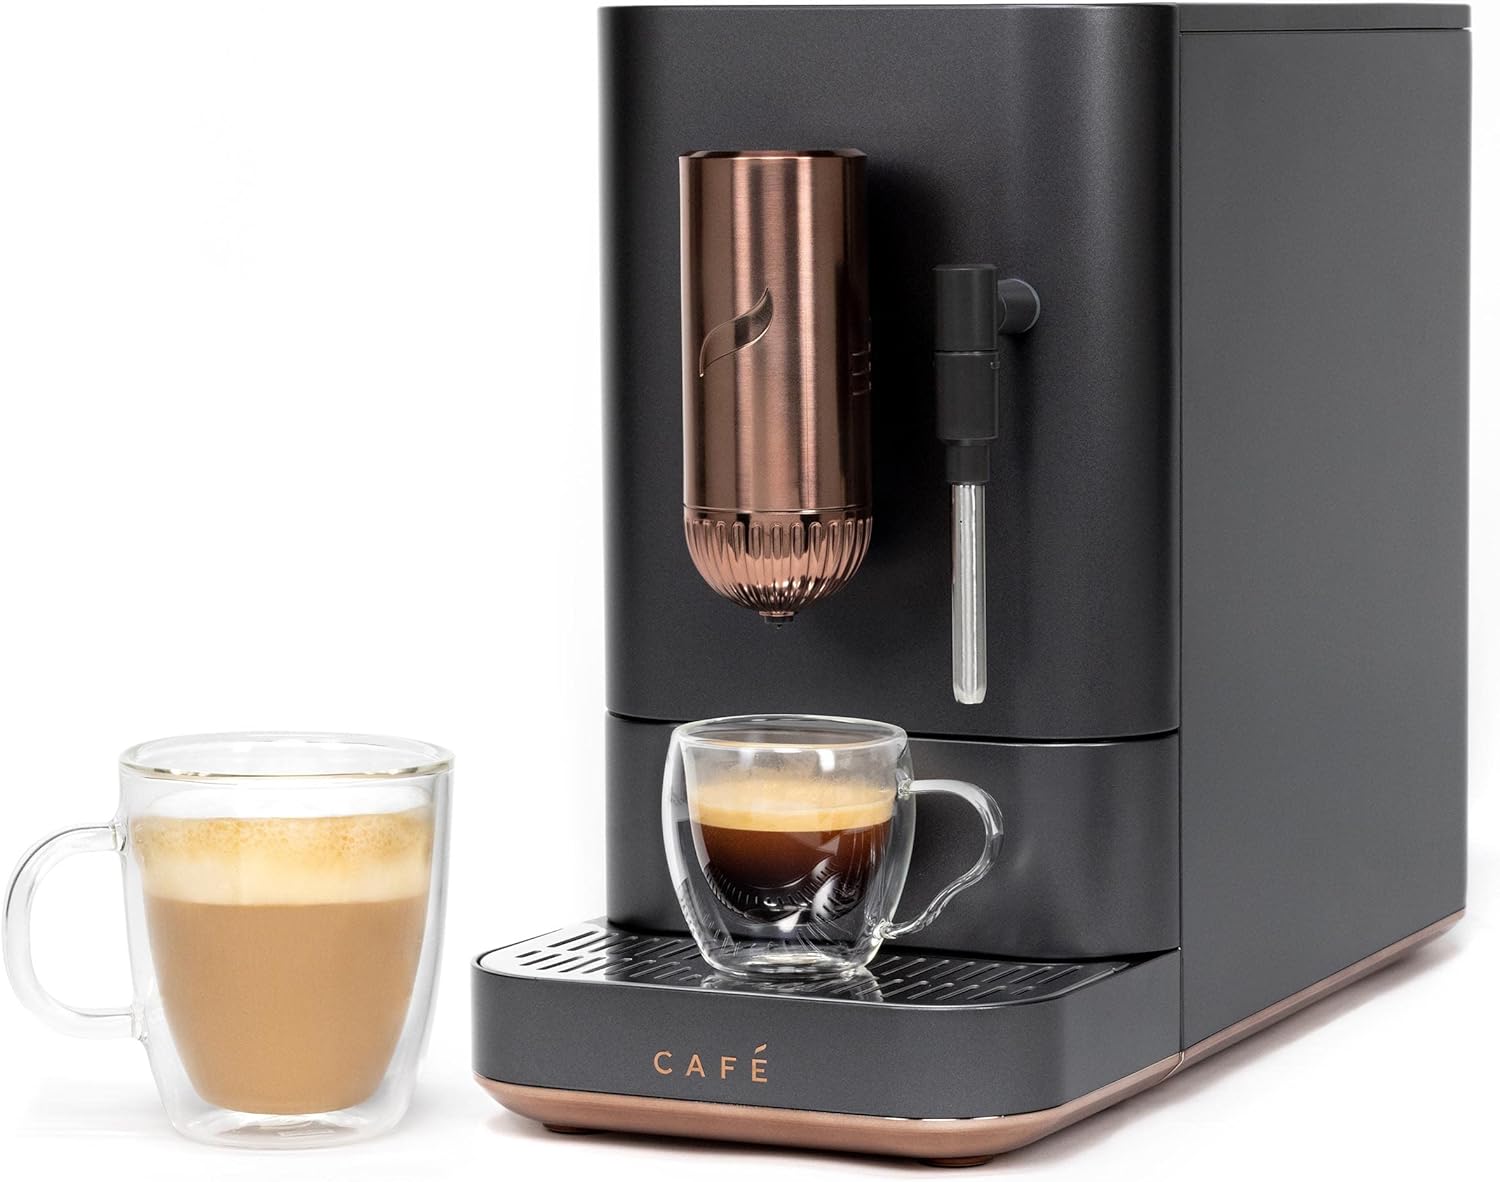 Café Affetto Automatic Espresso Machine - $245